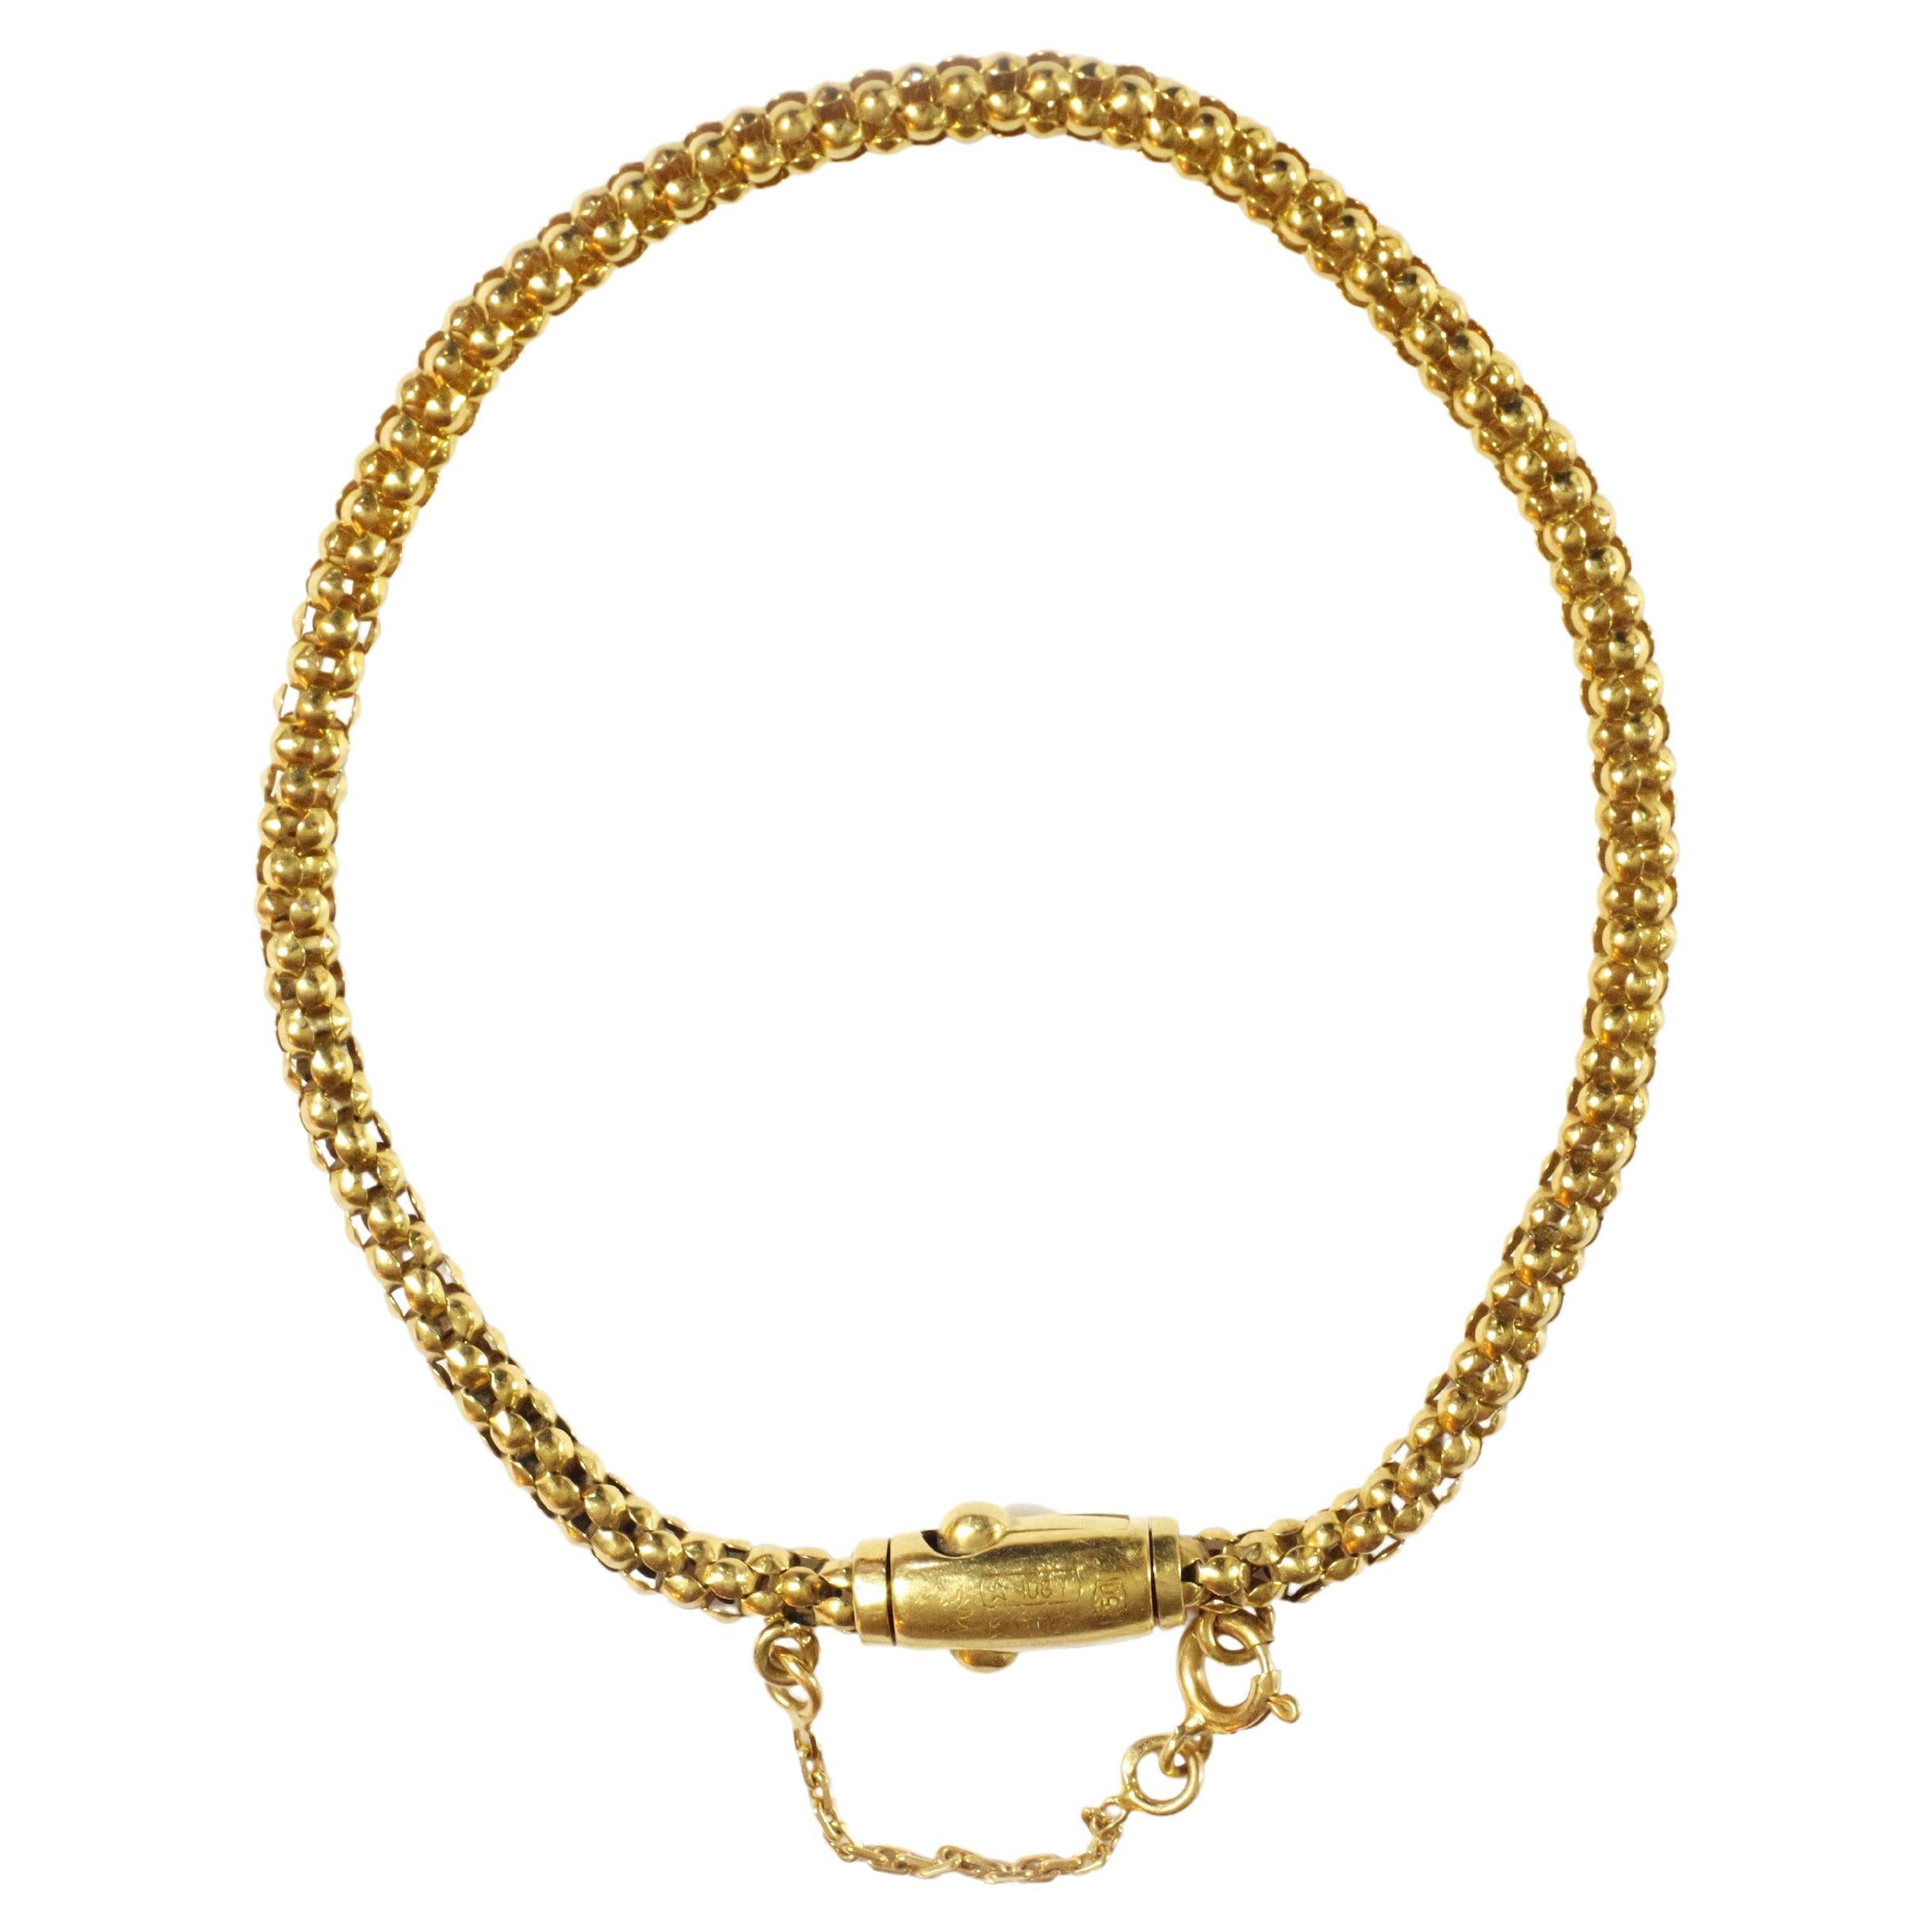 Italian 18k Gold Bracelet, Flexible Mesh, Pre-Owed Gold Bracelet